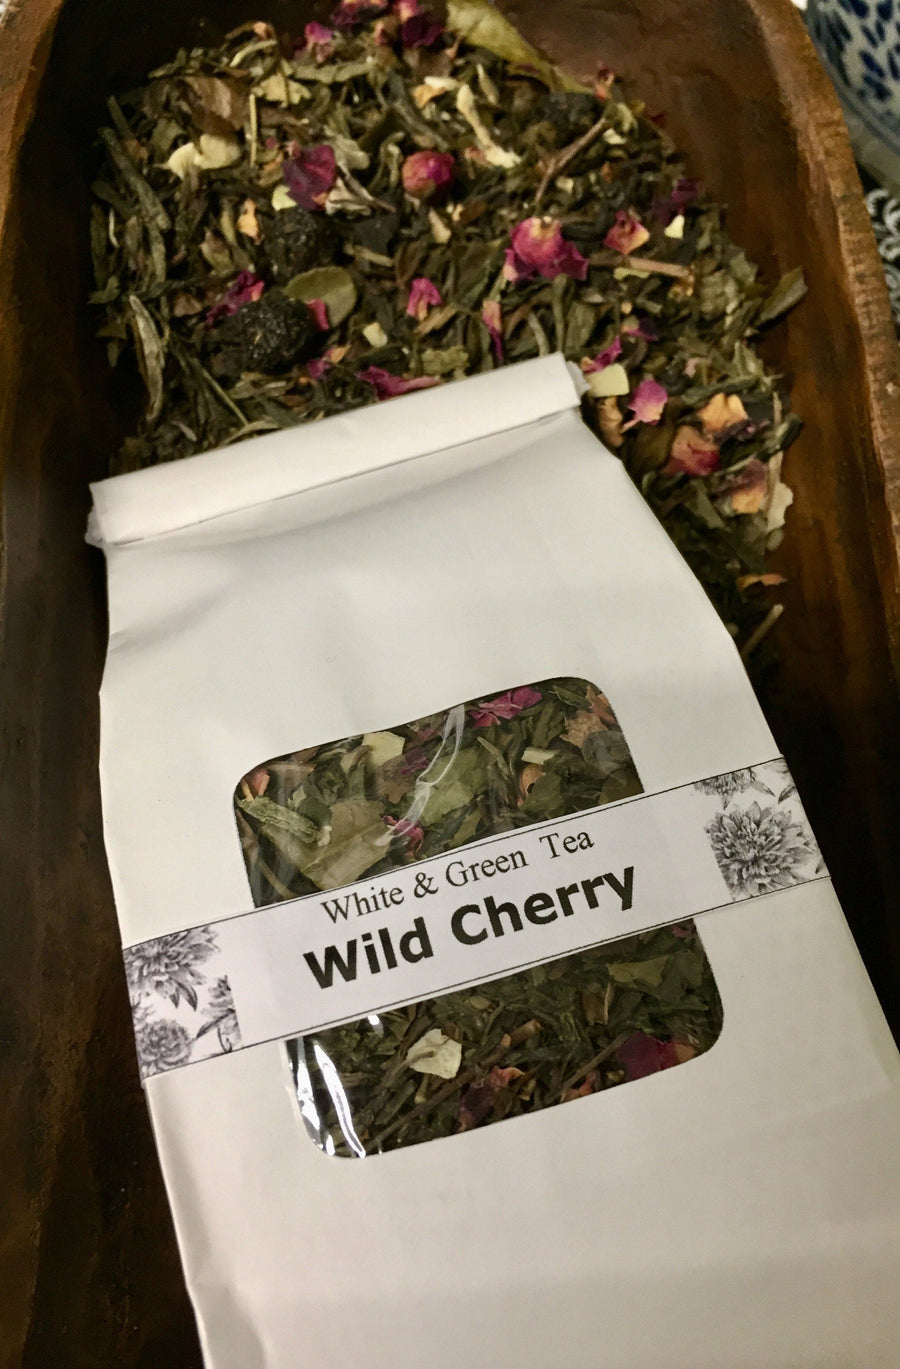 Wild Cherry White tea at www.glenbrookfarm.com